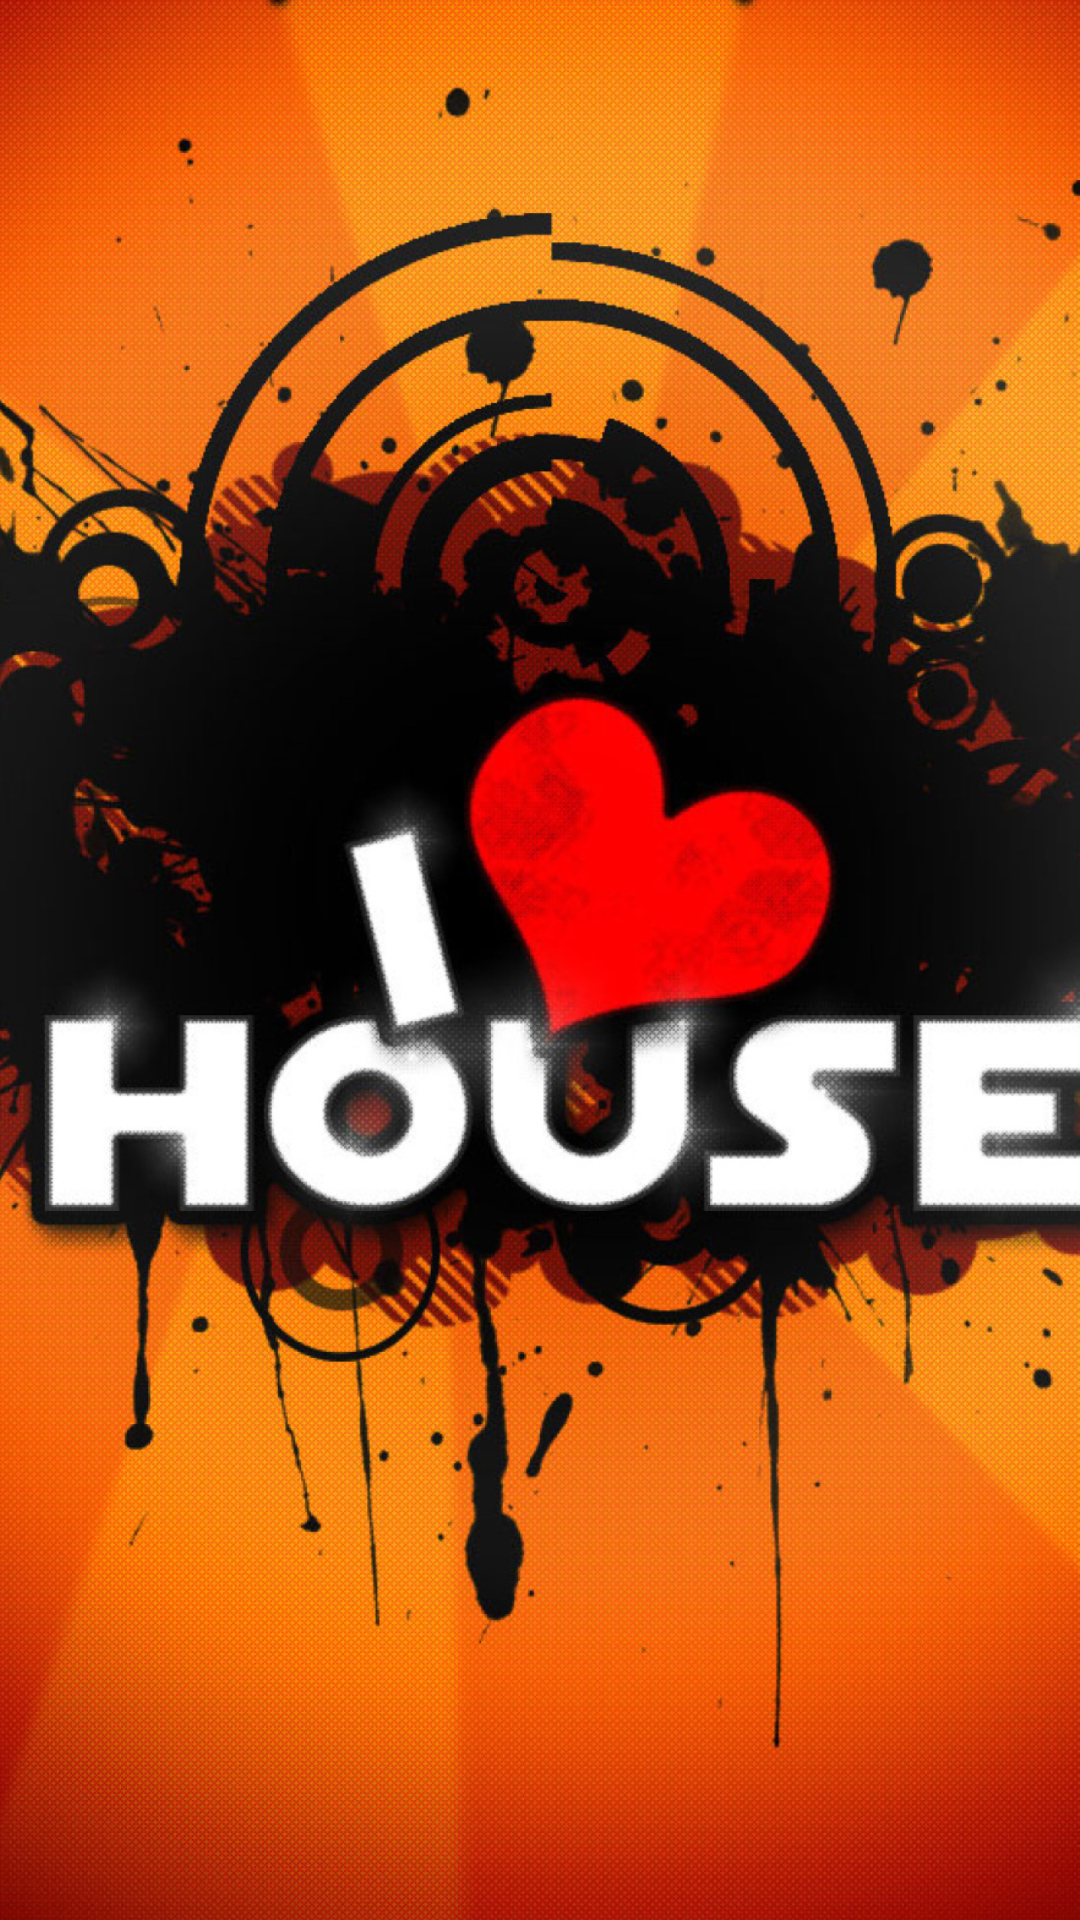 I Love House Music wallpaper 1080x1920